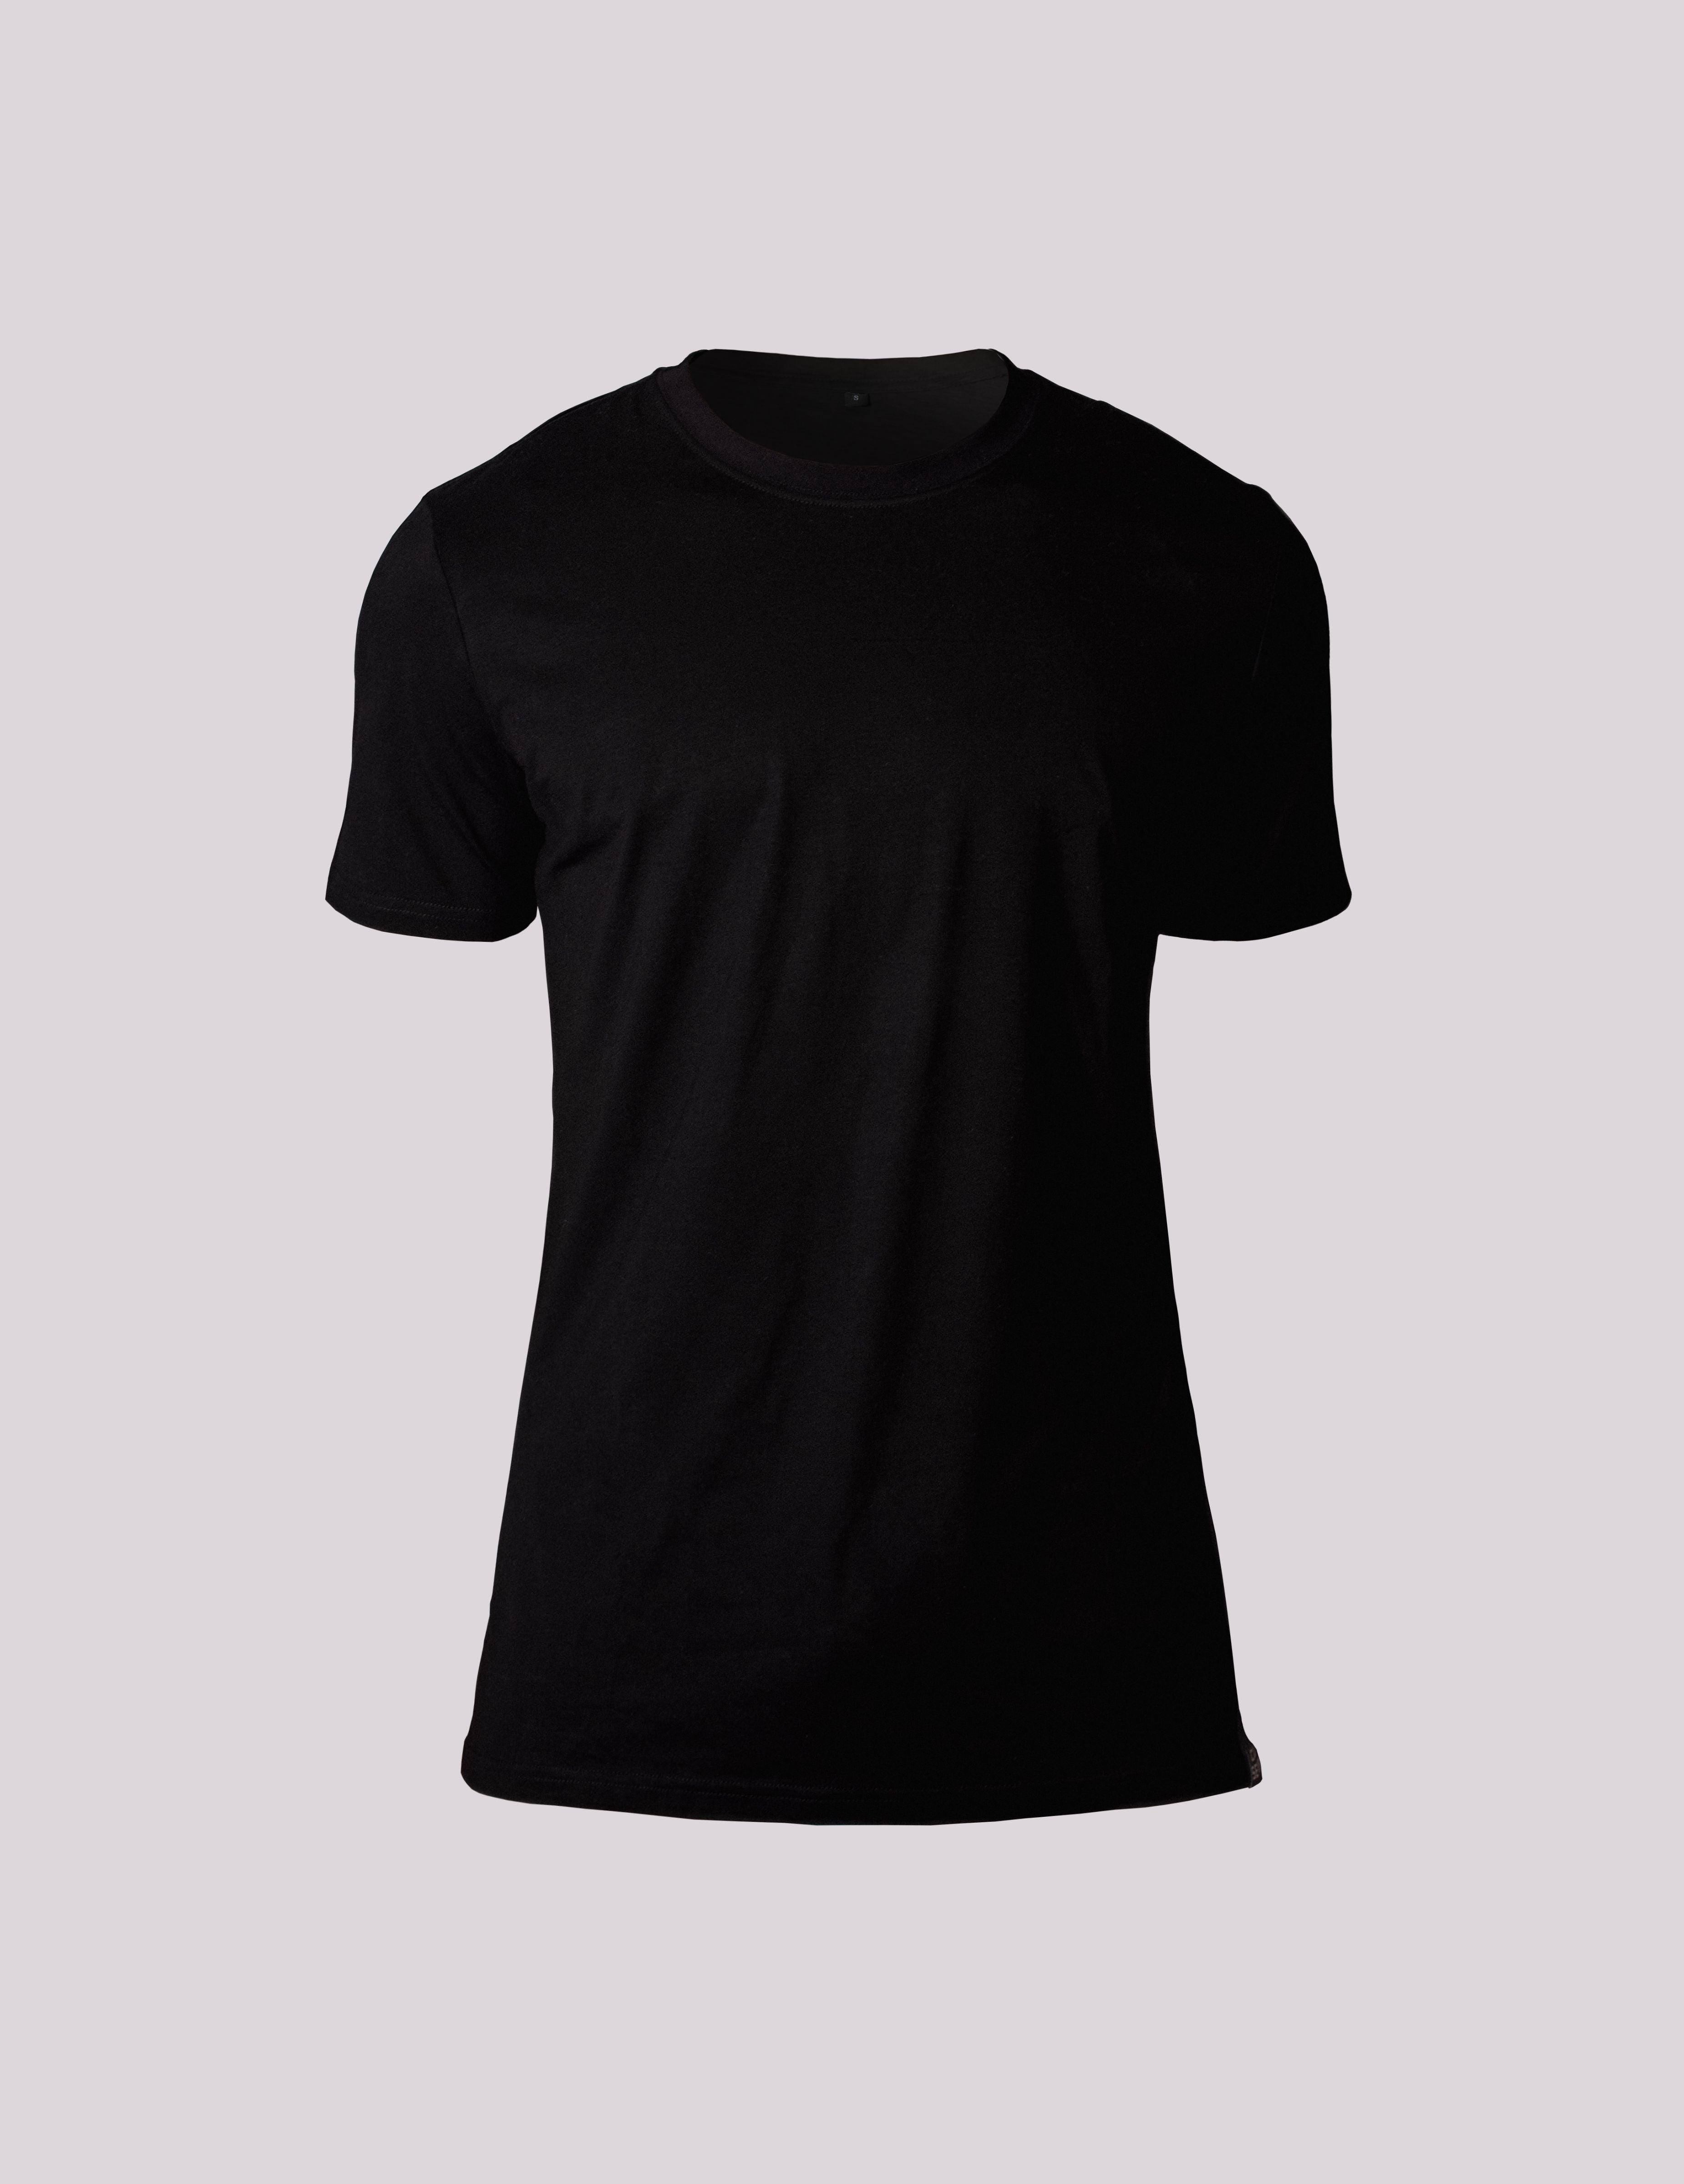 LuxBlackT-Shirt.jpg